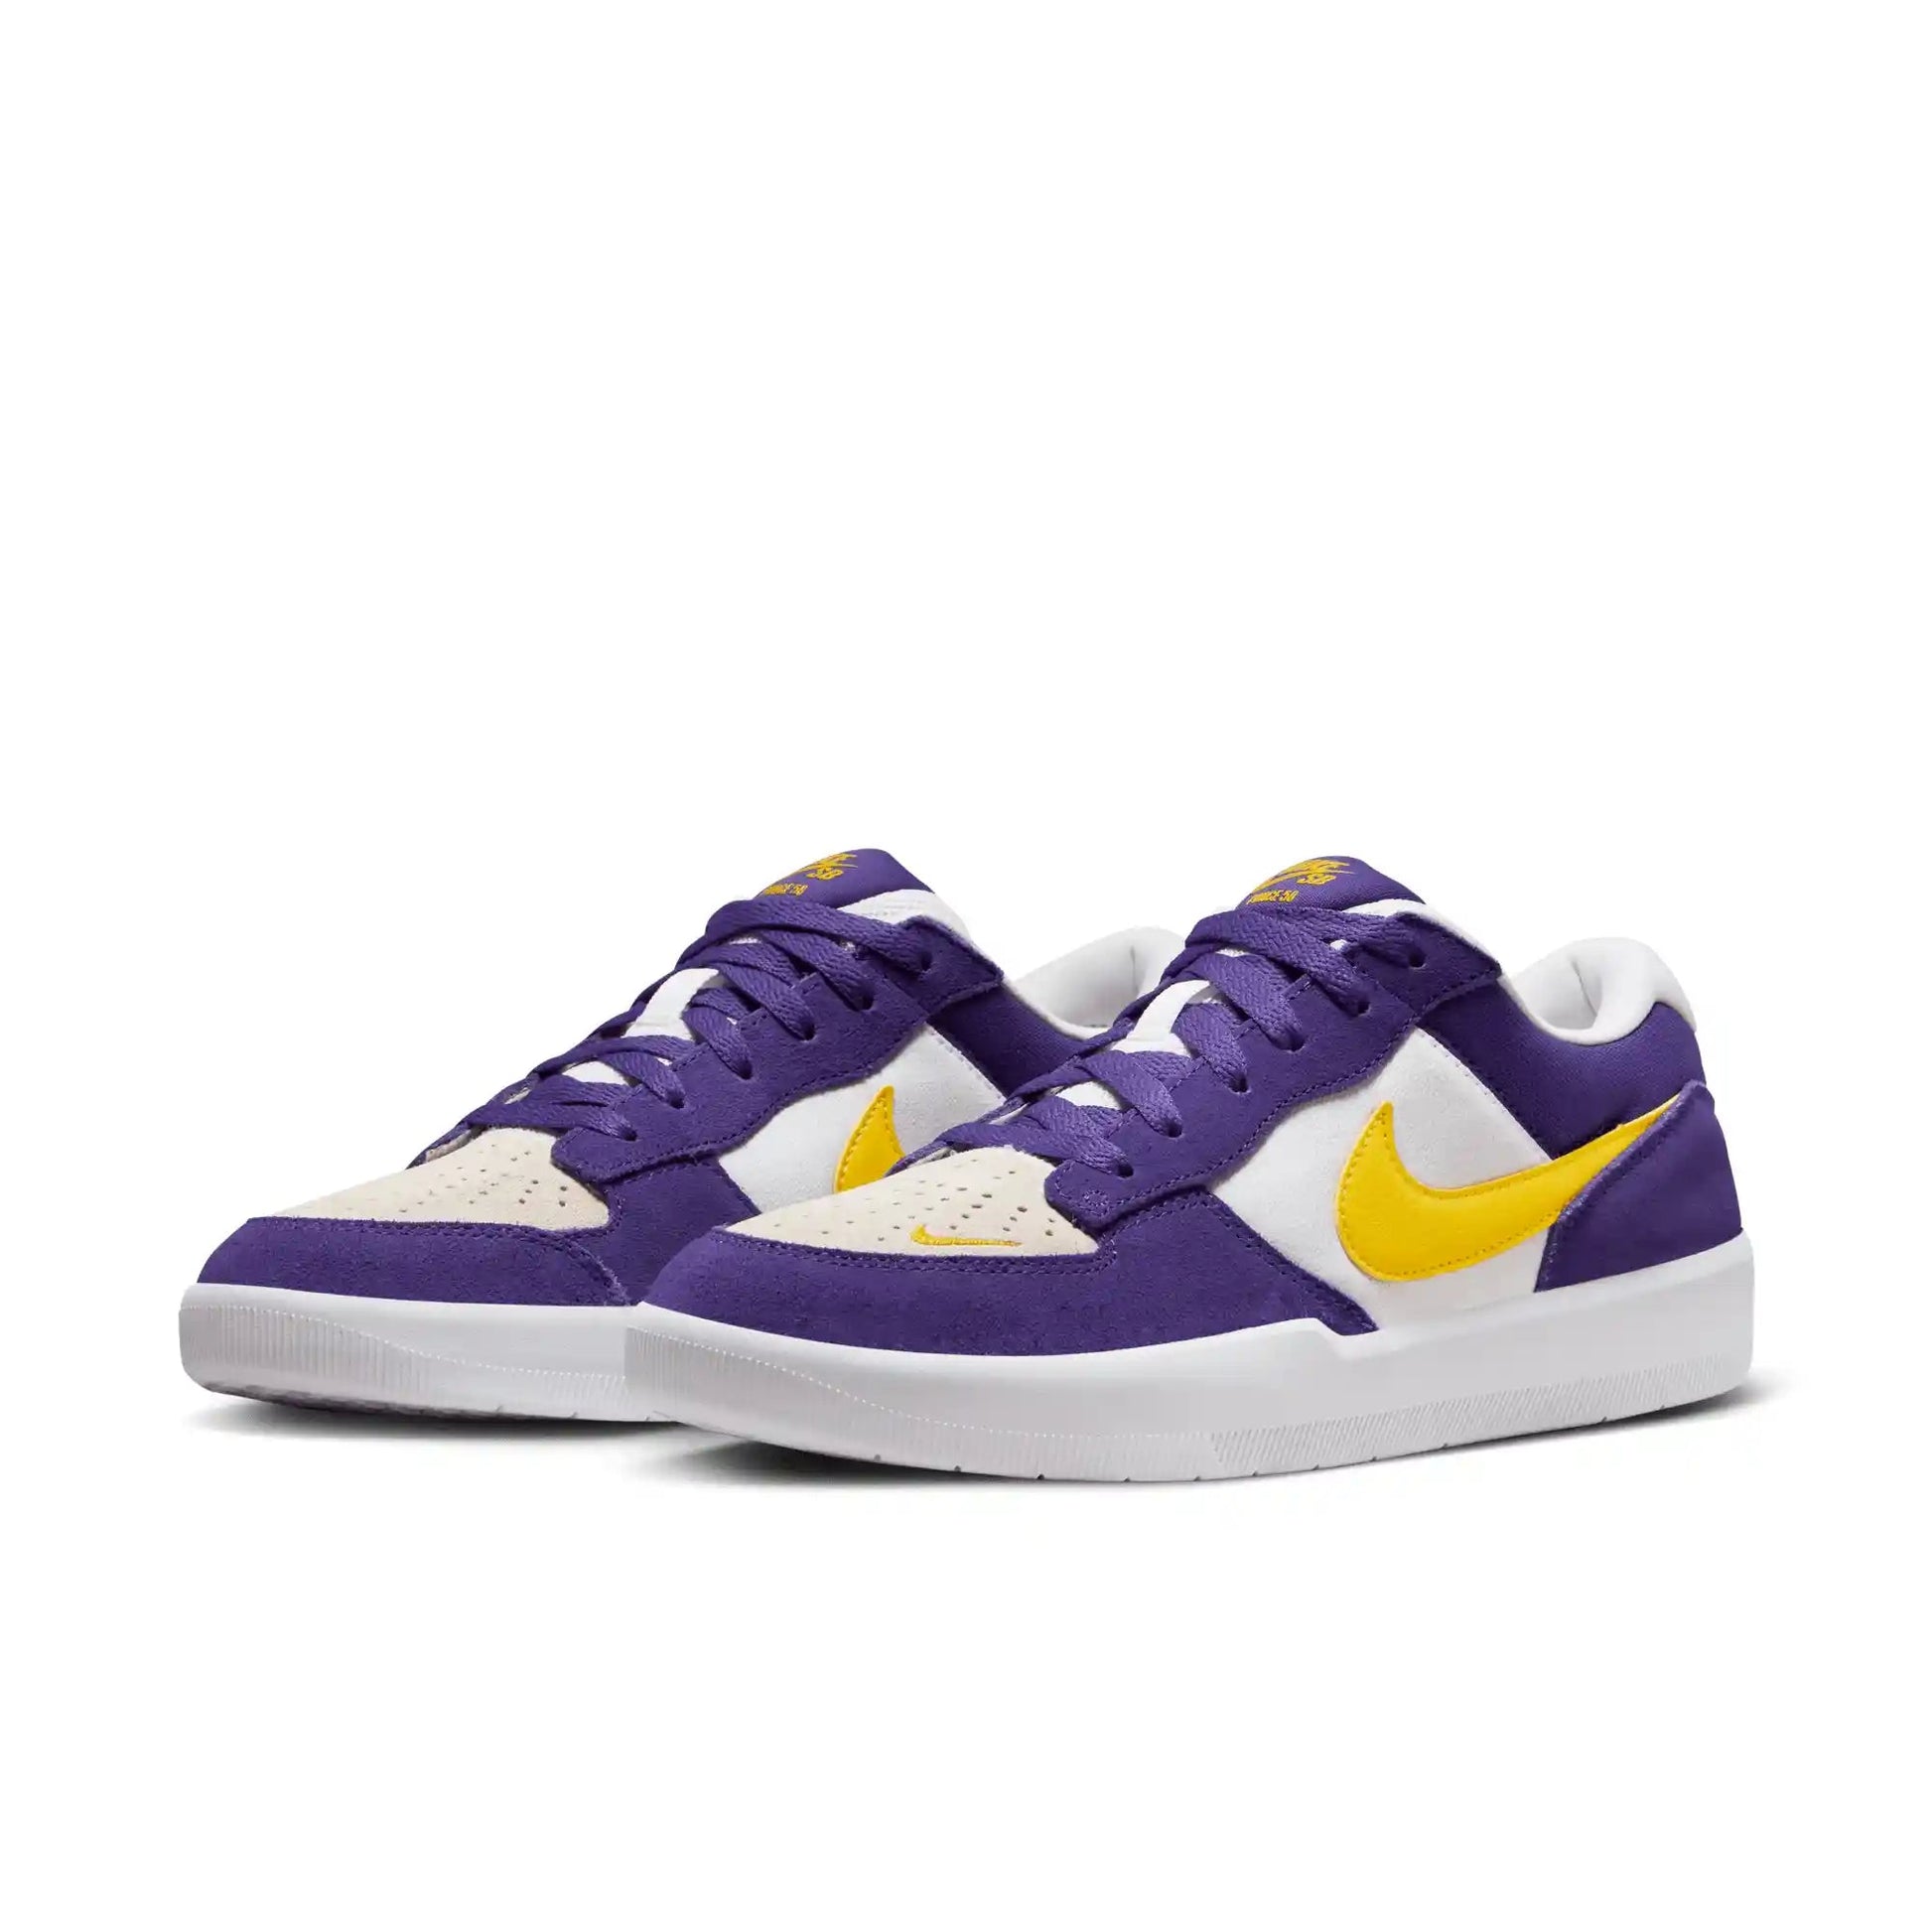 Nike SB Force 58, court purple/amarillo-white-white - Tiki Room Skateboards - 2